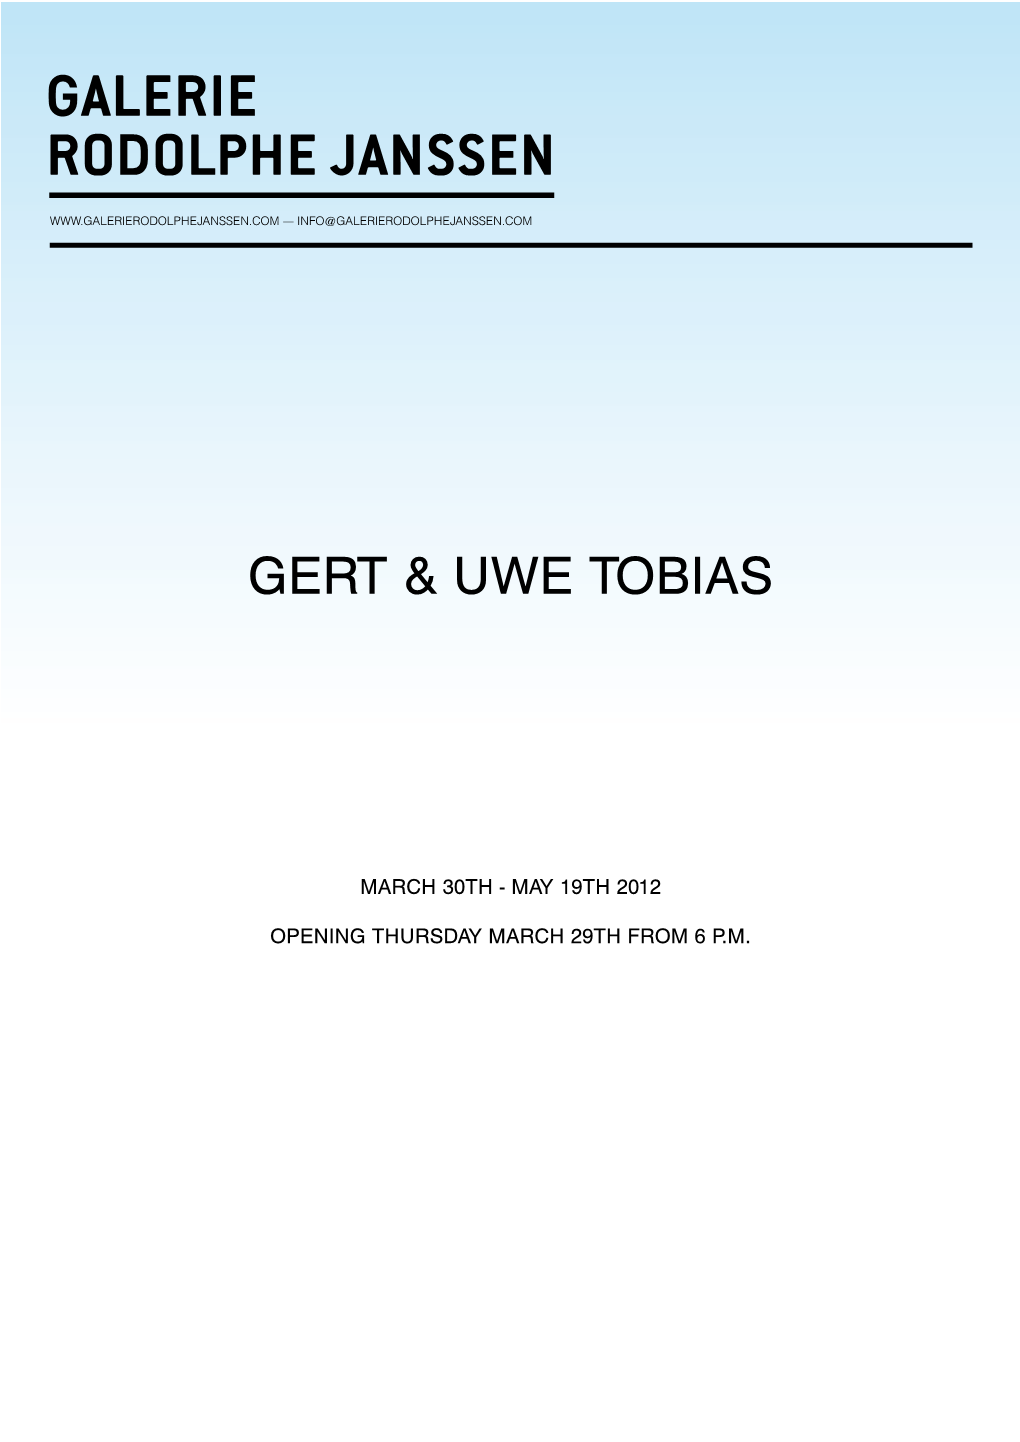 Gert & Uwe Tobias